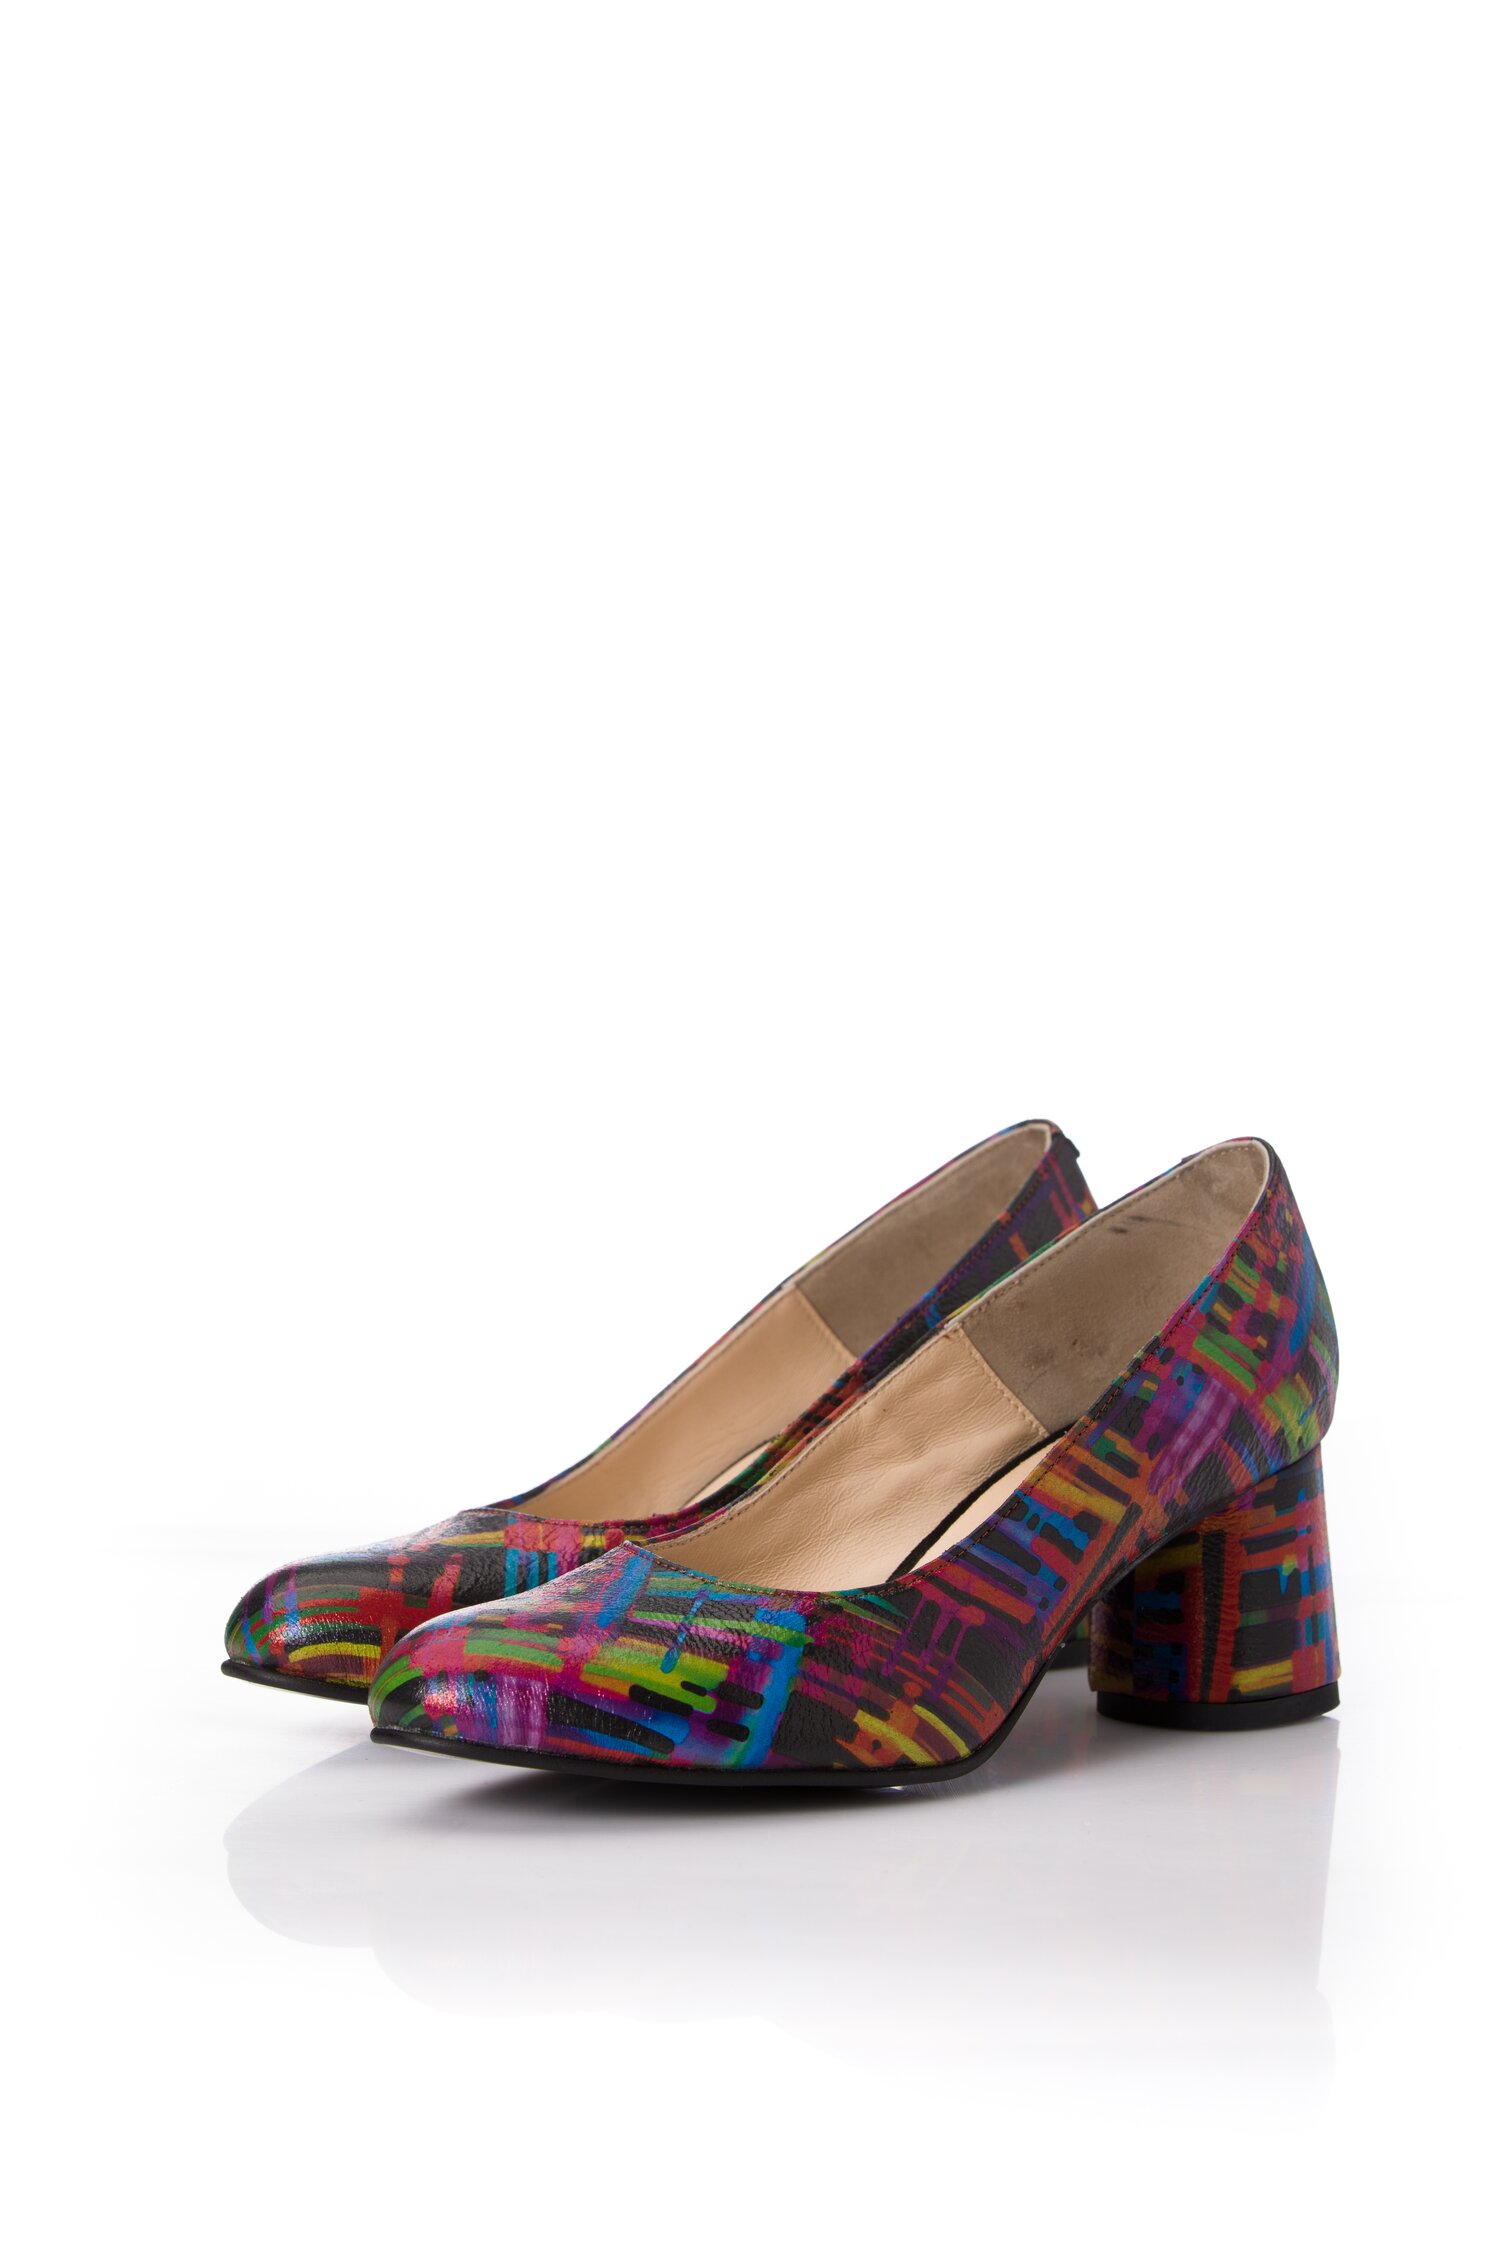 Pantofi din piele naturala cu imprimeu in dungi multicolore